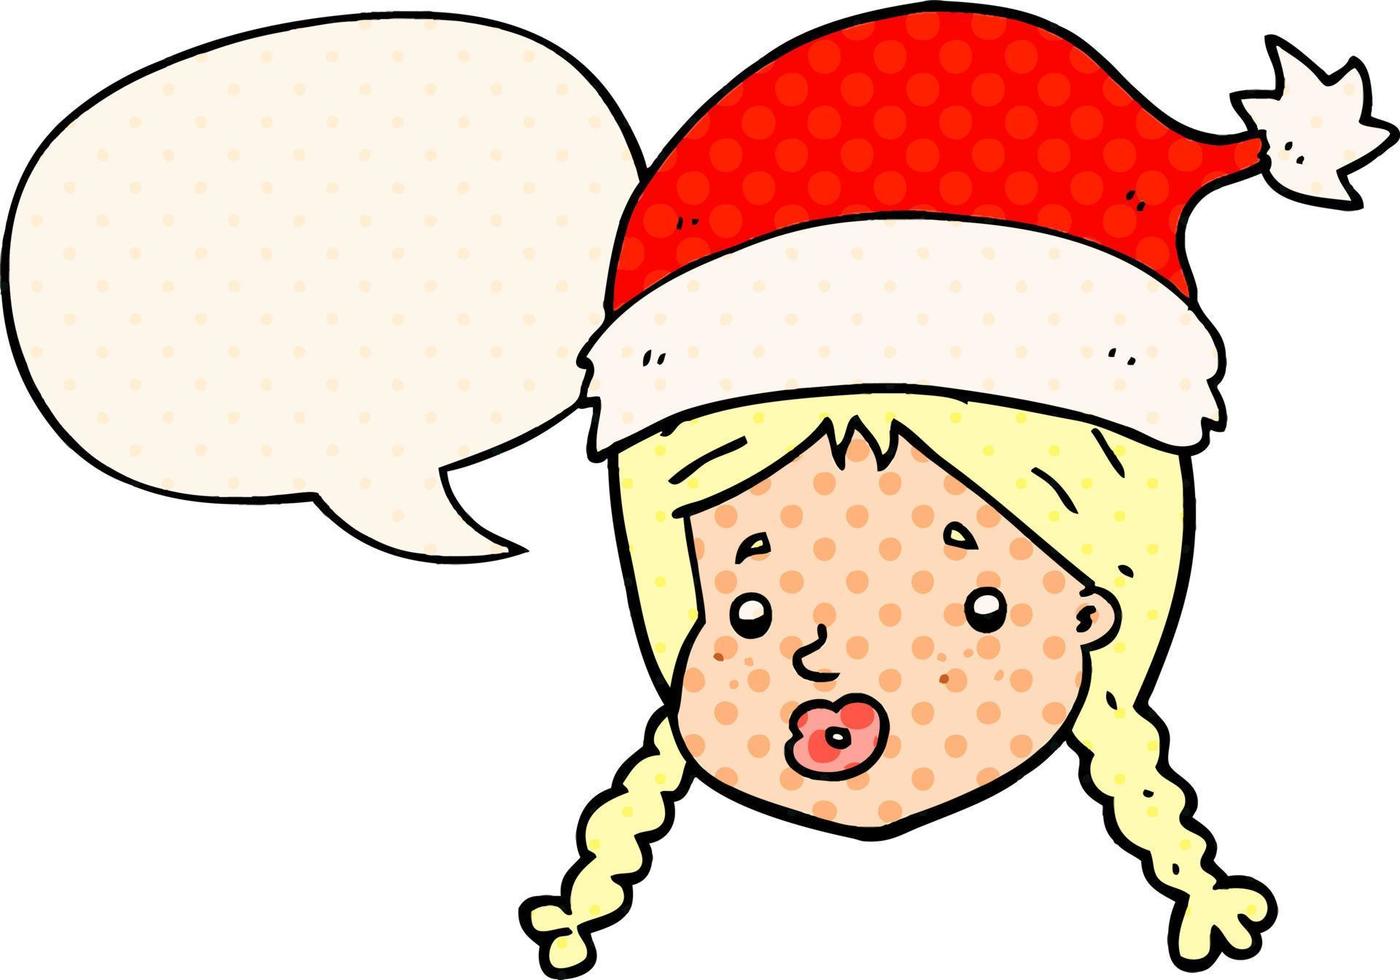 ragazza del fumetto che indossa cappello di Natale e nuvoletta in stile fumetto vettore